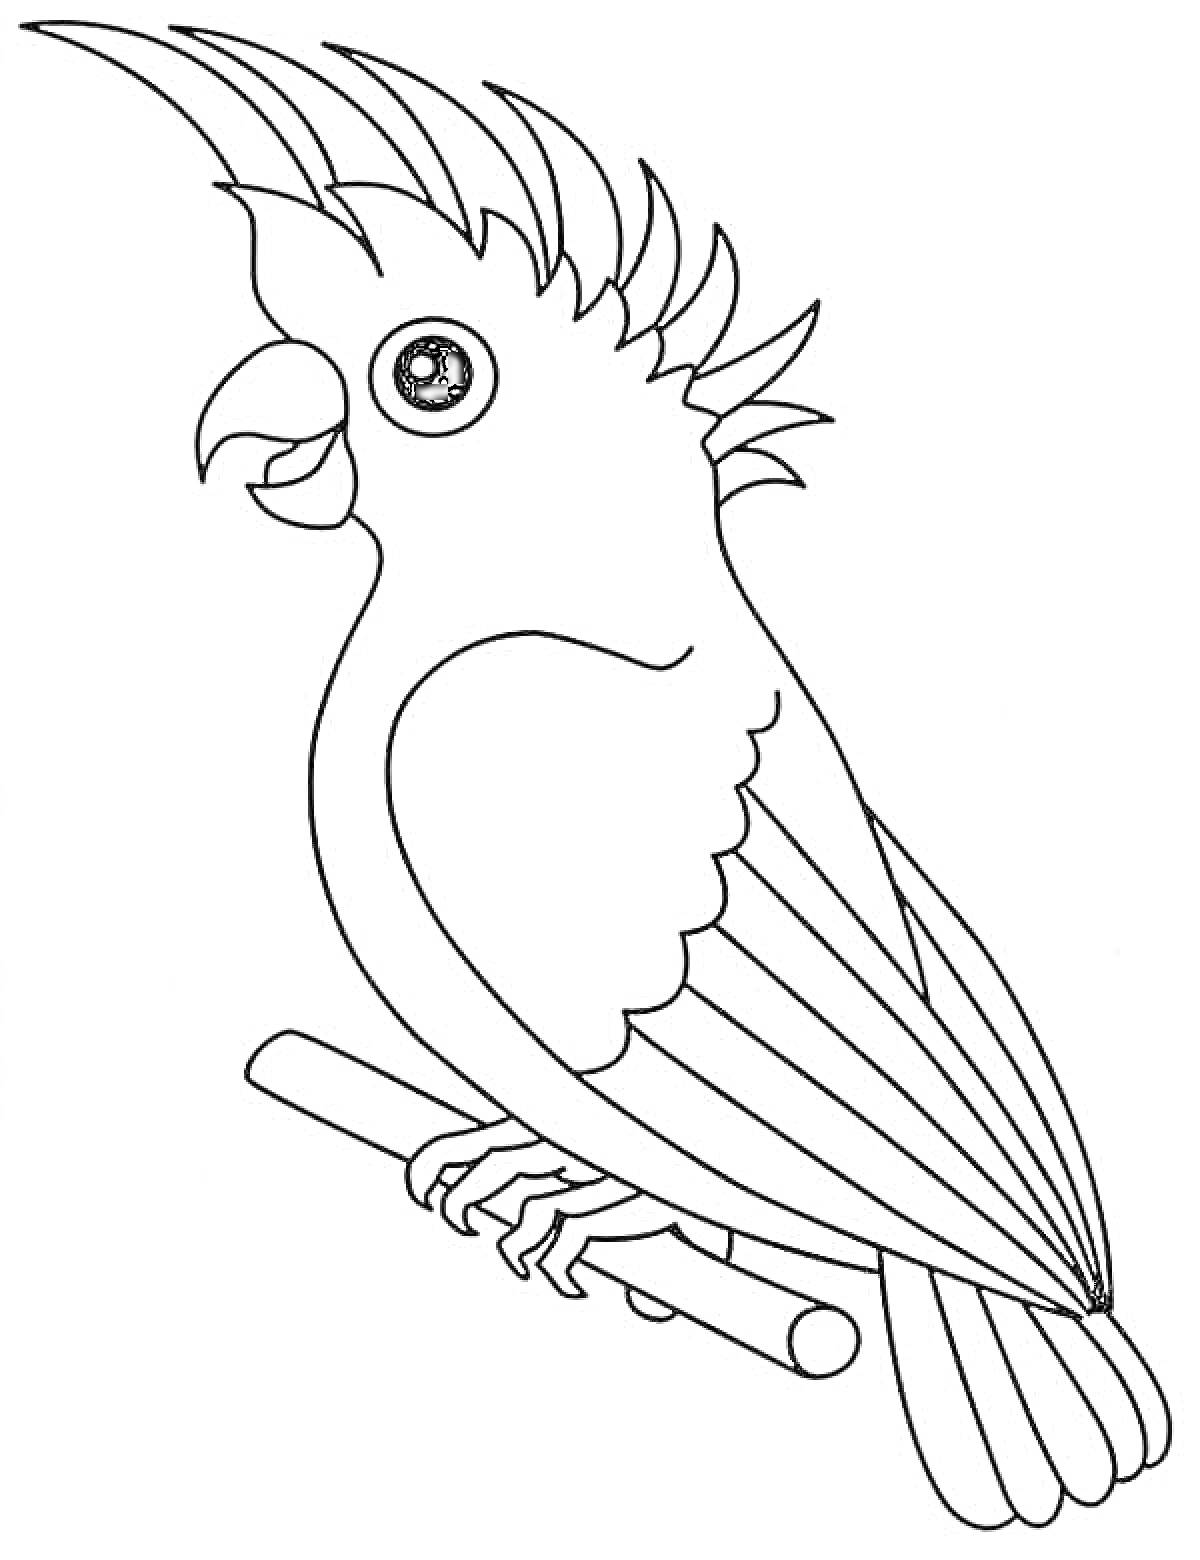 Раскраска Попугай на ветке с поднятым хохолком